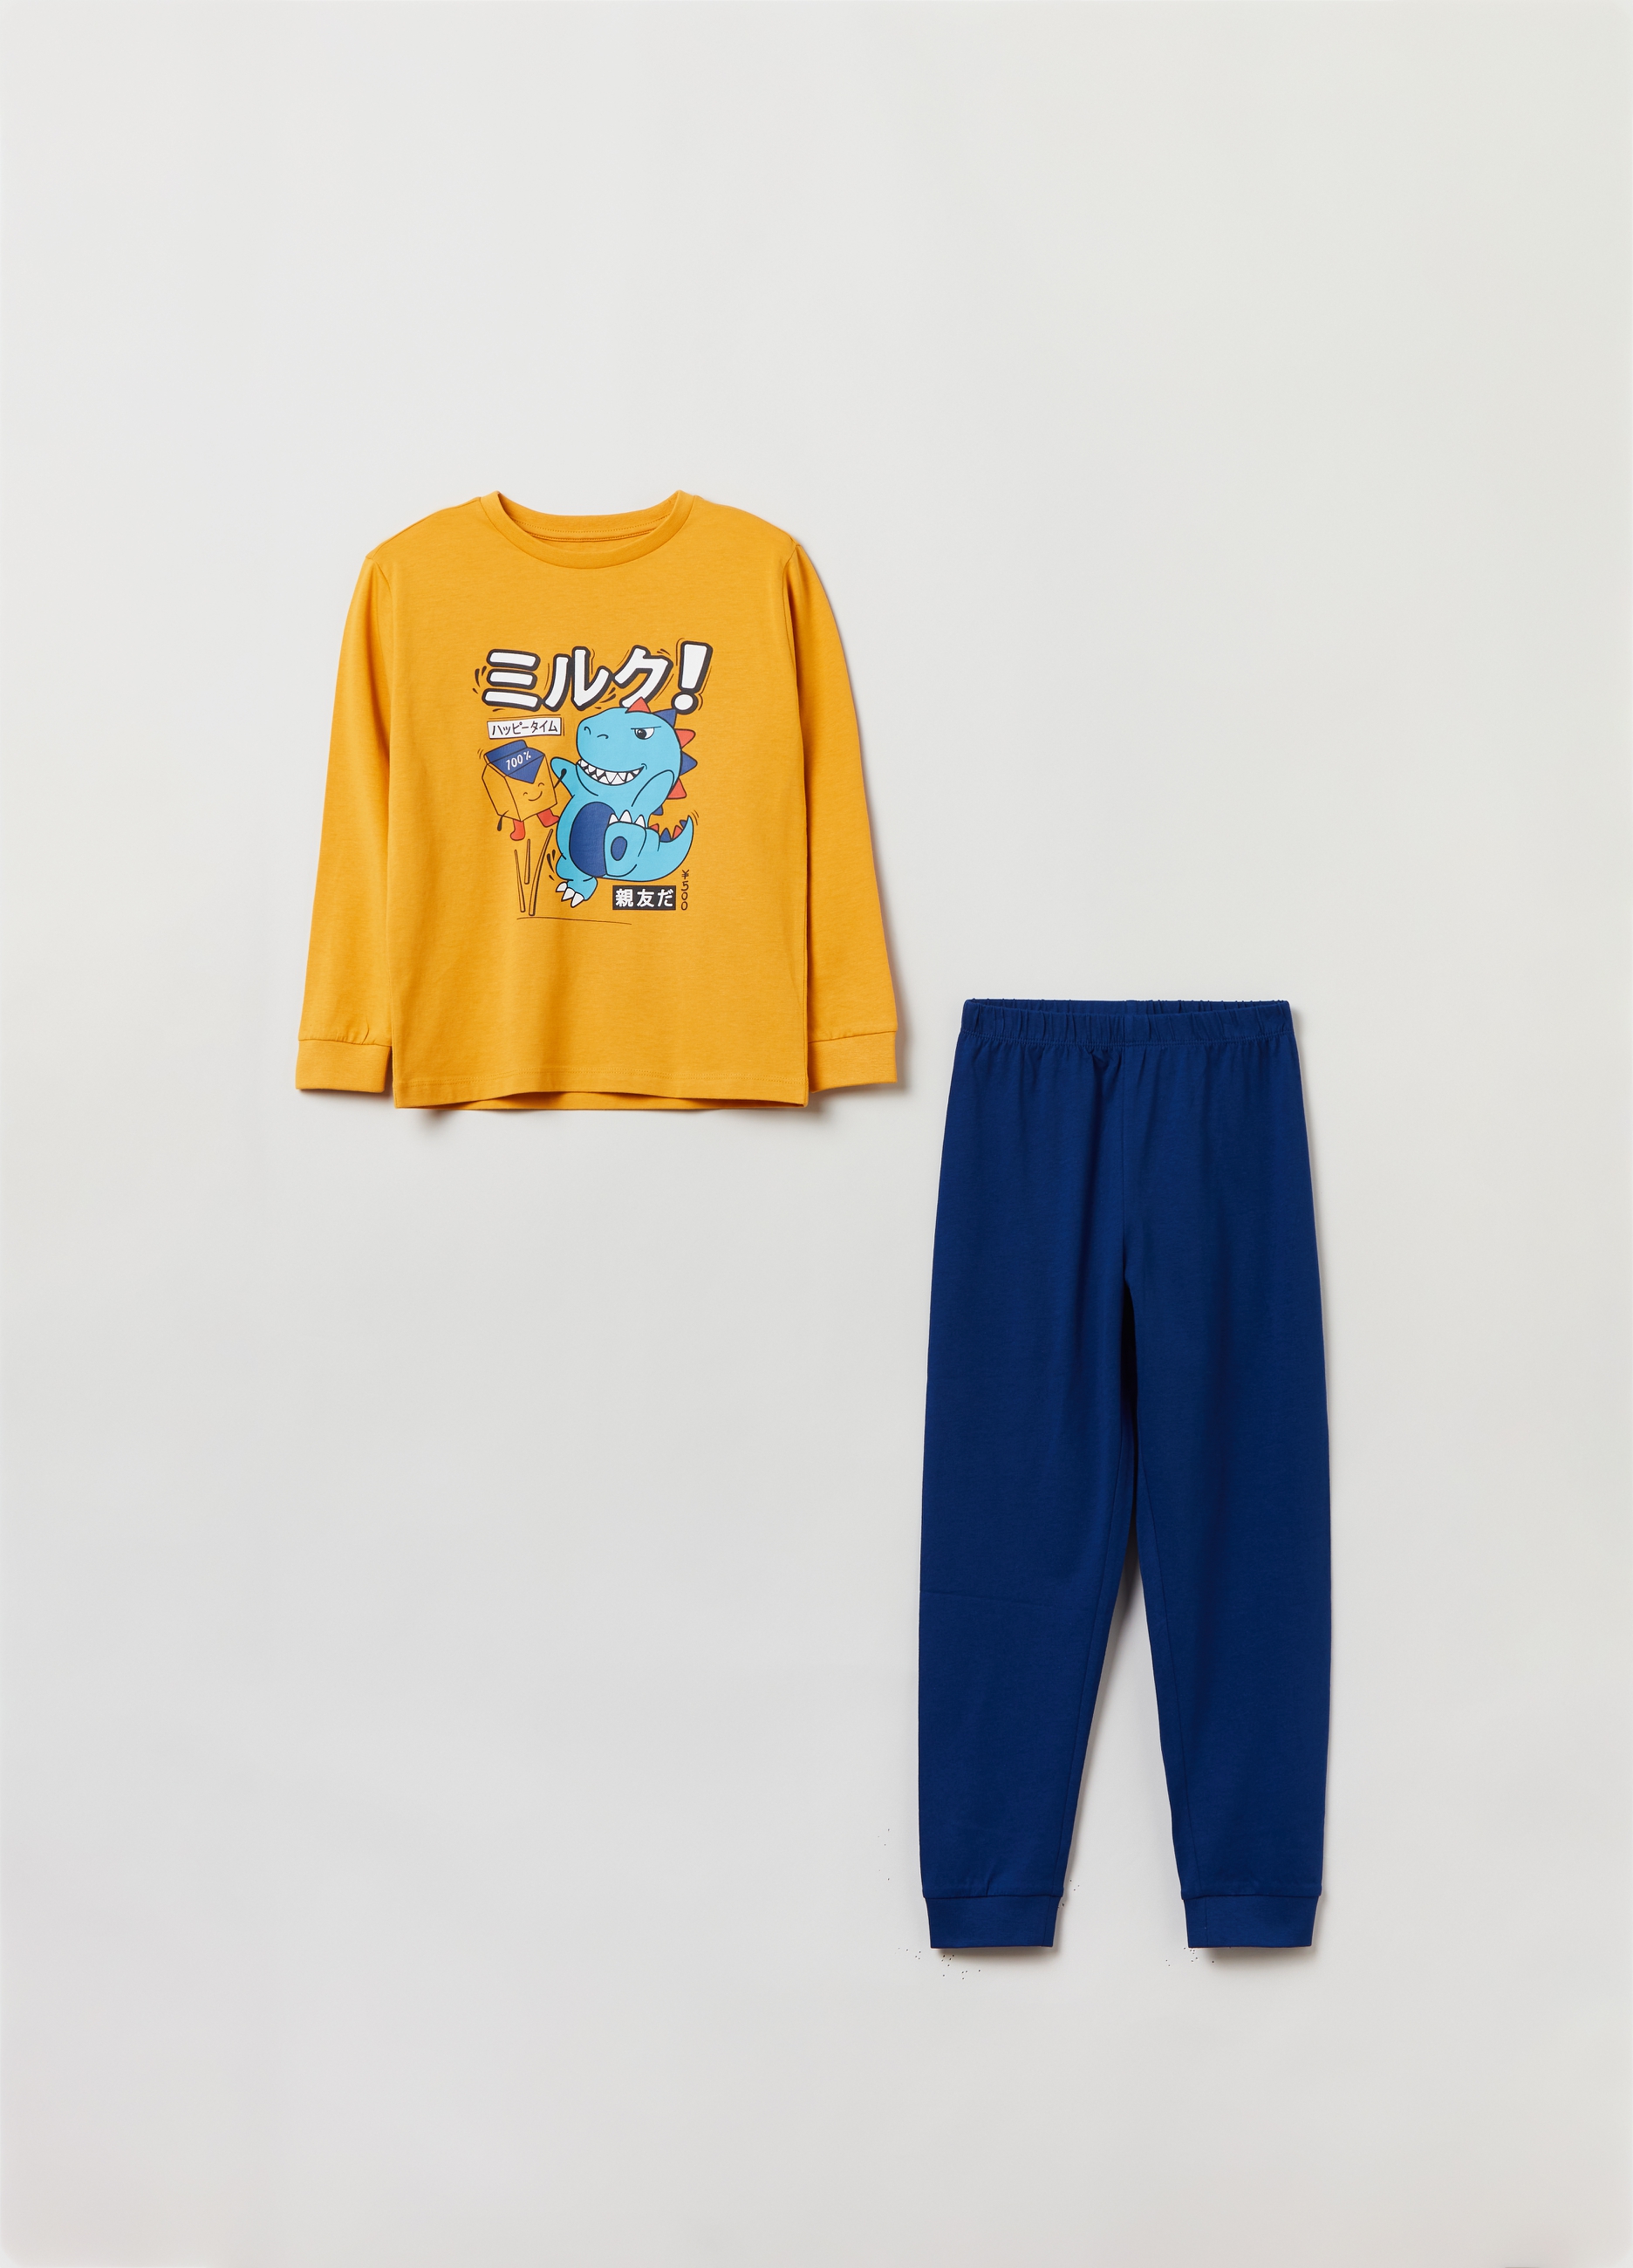 Пижама OVS для мальчиков, желтая, 5-6 лет, 1825641